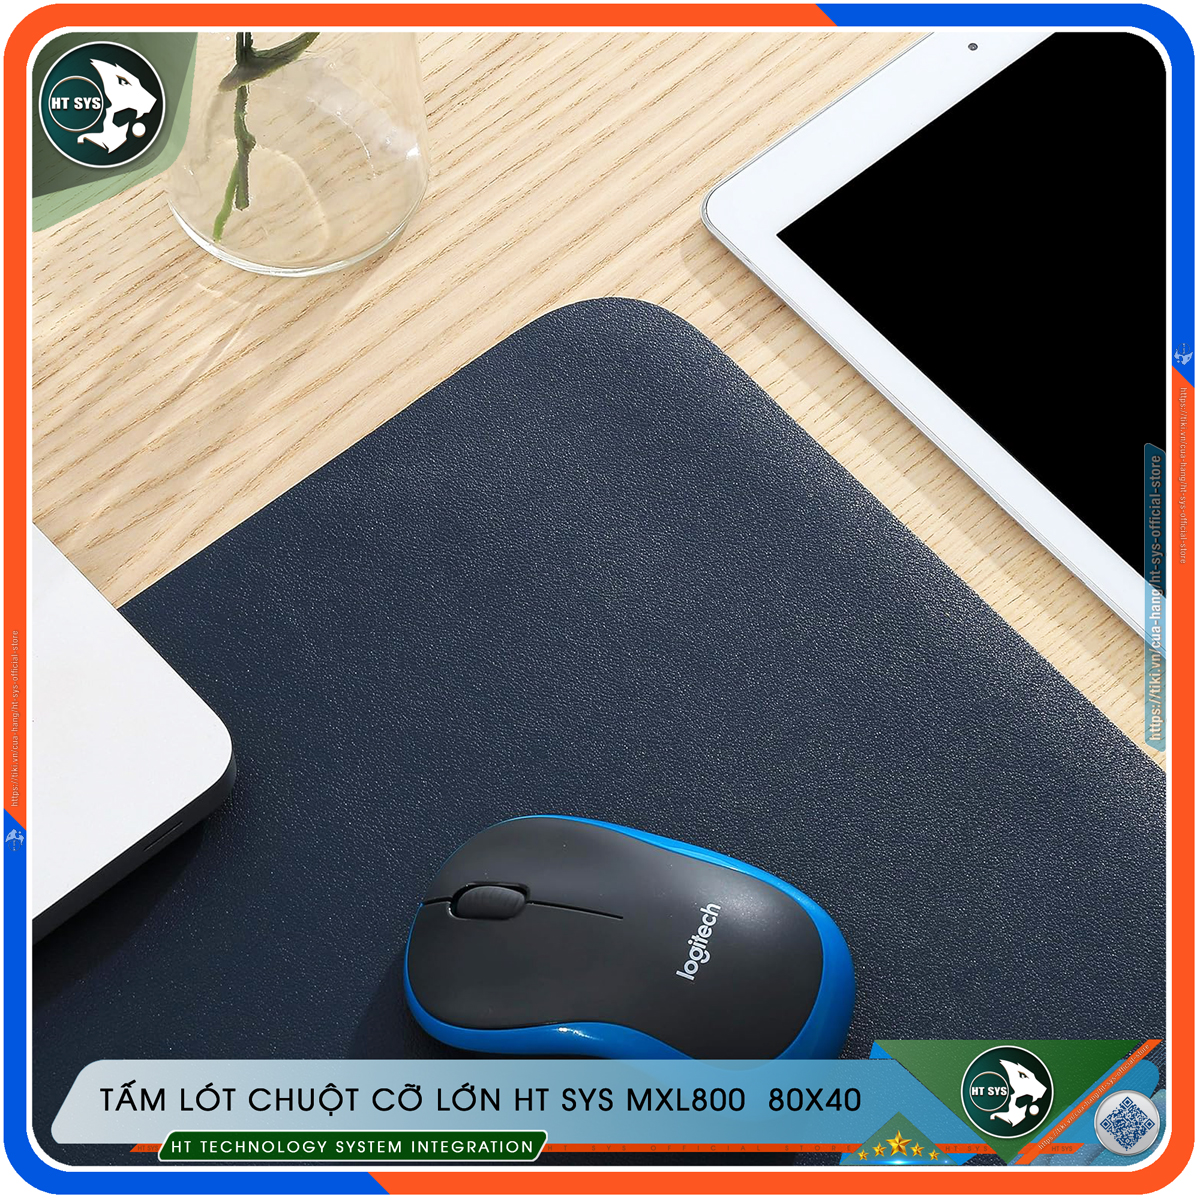 Lót Chuột HT SYS Mouse Pad - Tấm Lót Chuột MXL800 EXTENDED 80x40 - Sử Dụng 2 Mặt, Chất Liệu PU Cao Cấp, Mềm Mại, Không Nhăn, Chống Thấm Nước - Hàng Chính Hãng